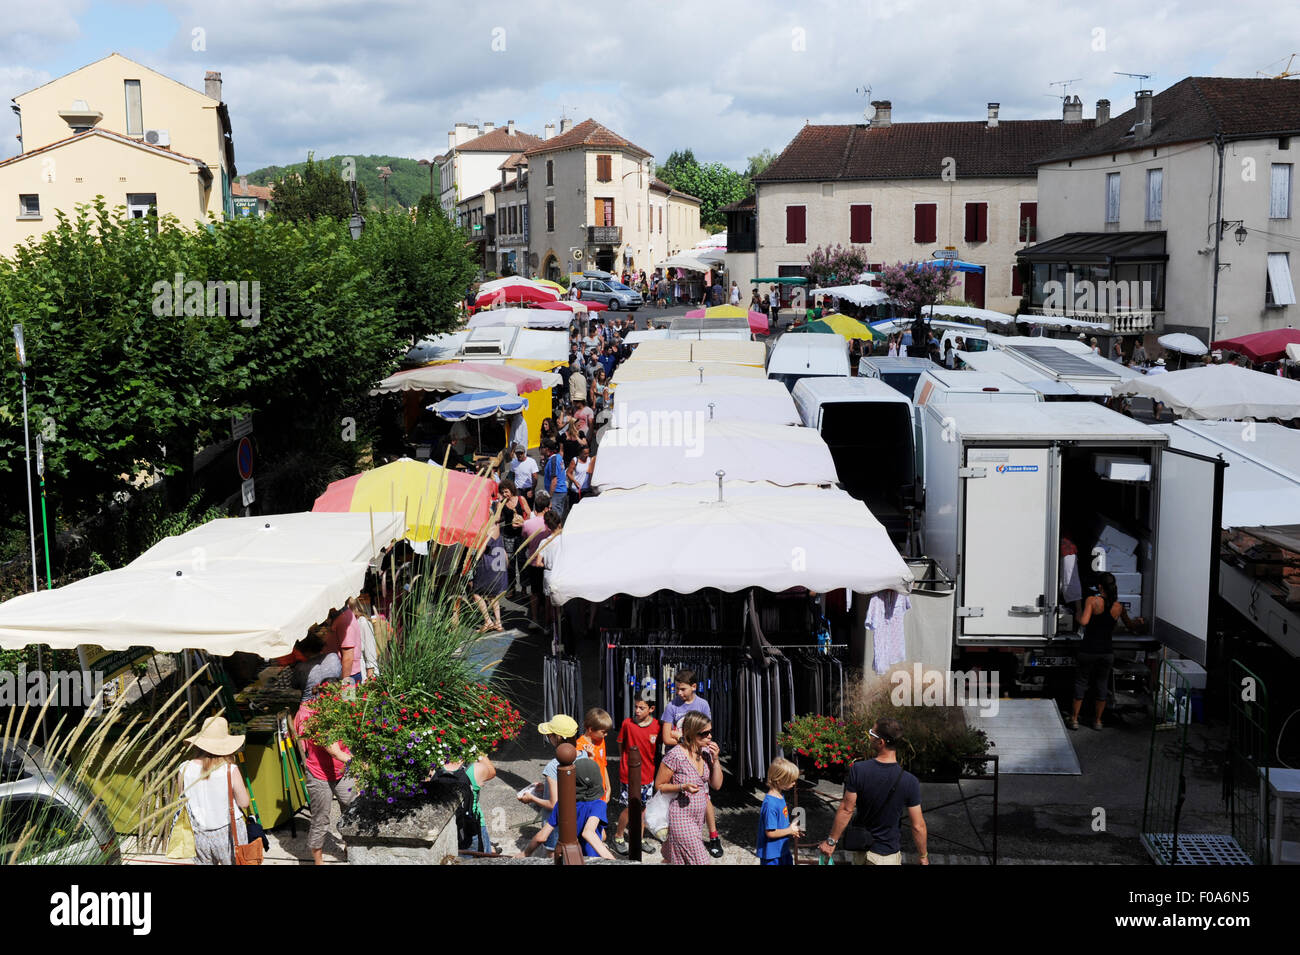 Giornata di mercato a Puy-l'Eveque che è una piccola città in Francia situato nel dipartimento di Lot, all'interno della regione Midi-Pirenei. Foto Stock